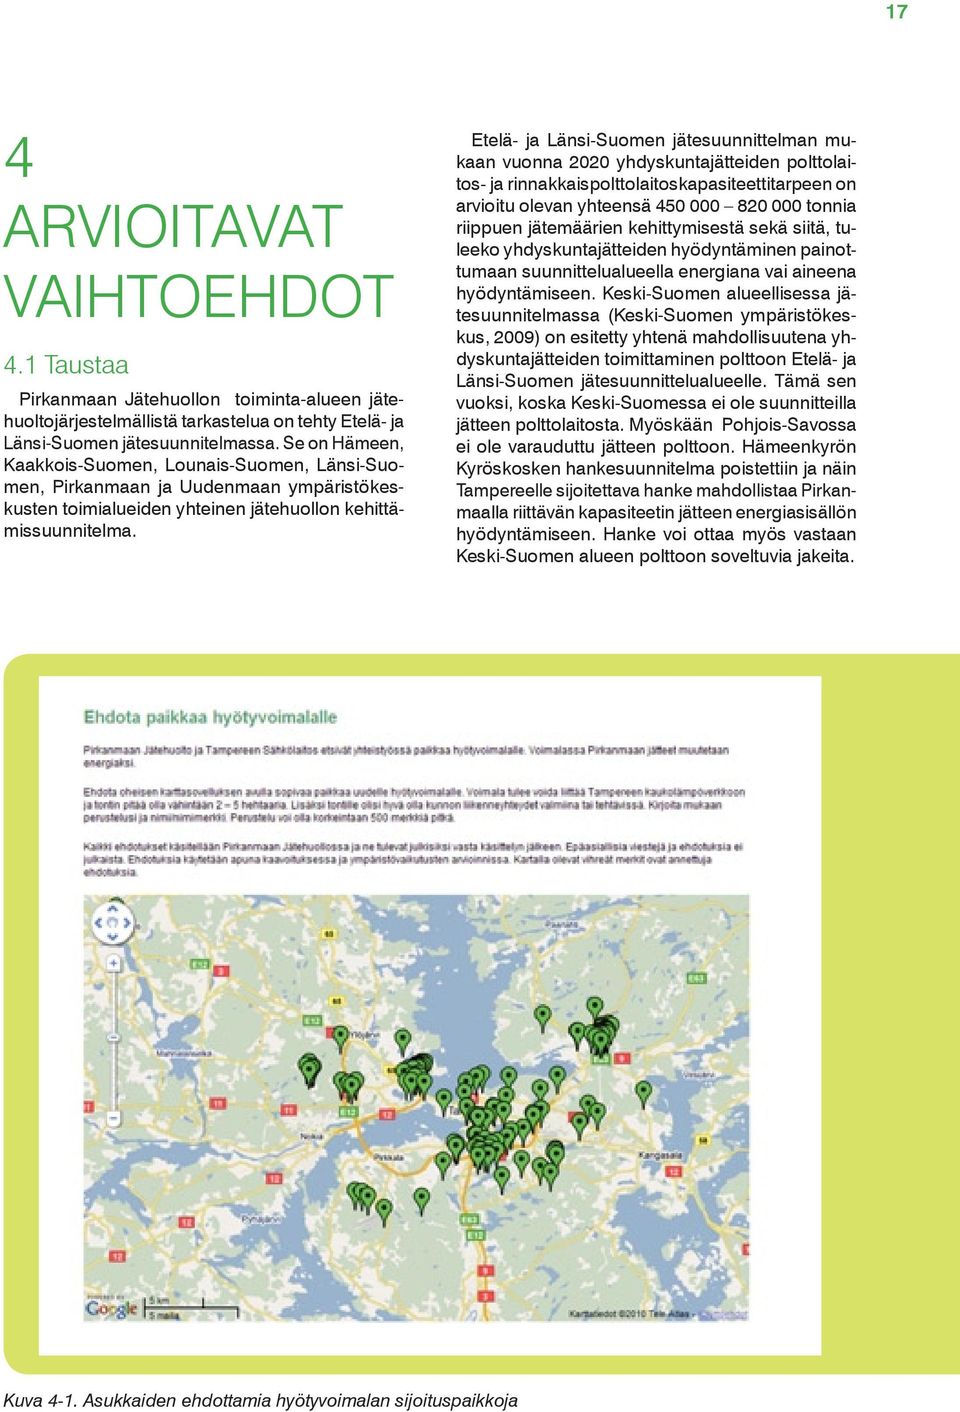 Etelä- ja Länsi-Suomen jätesuunnittelman mukaan vuonna 2020 yhdyskuntajätteiden polttolaitos- ja rinnakkaispolttolaitoskapasiteettitarpeen on arvioitu olevan yhteensä 450 000 820 000 tonnia riippuen